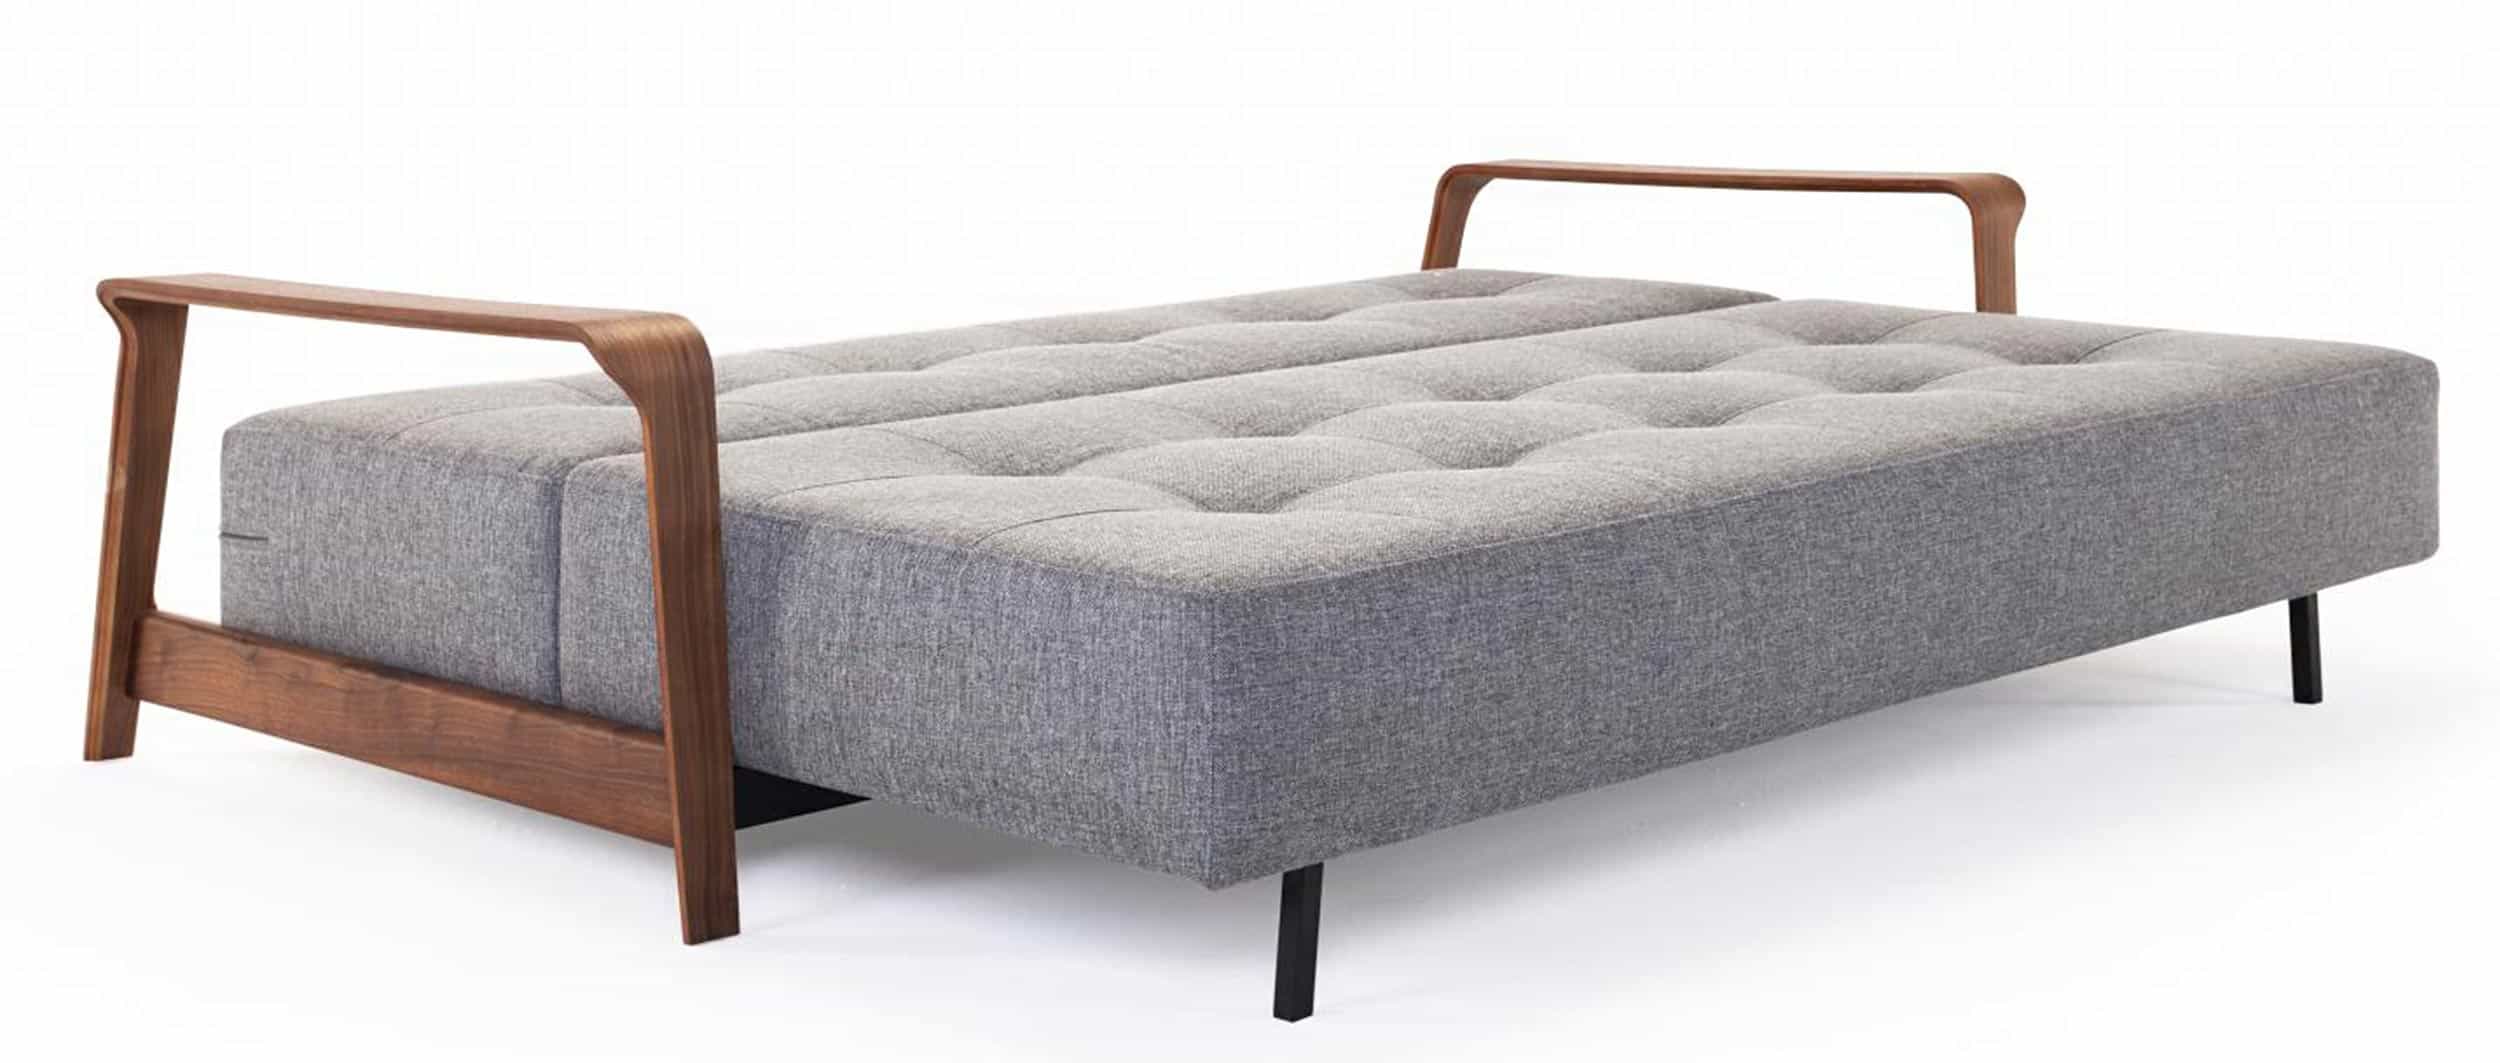 RAN DELUXE Schlafsofa von Innovation mit dunklen Holzarmlehnen, Lounge Sofa Gästebett für 2 Personen - 155x200 cm